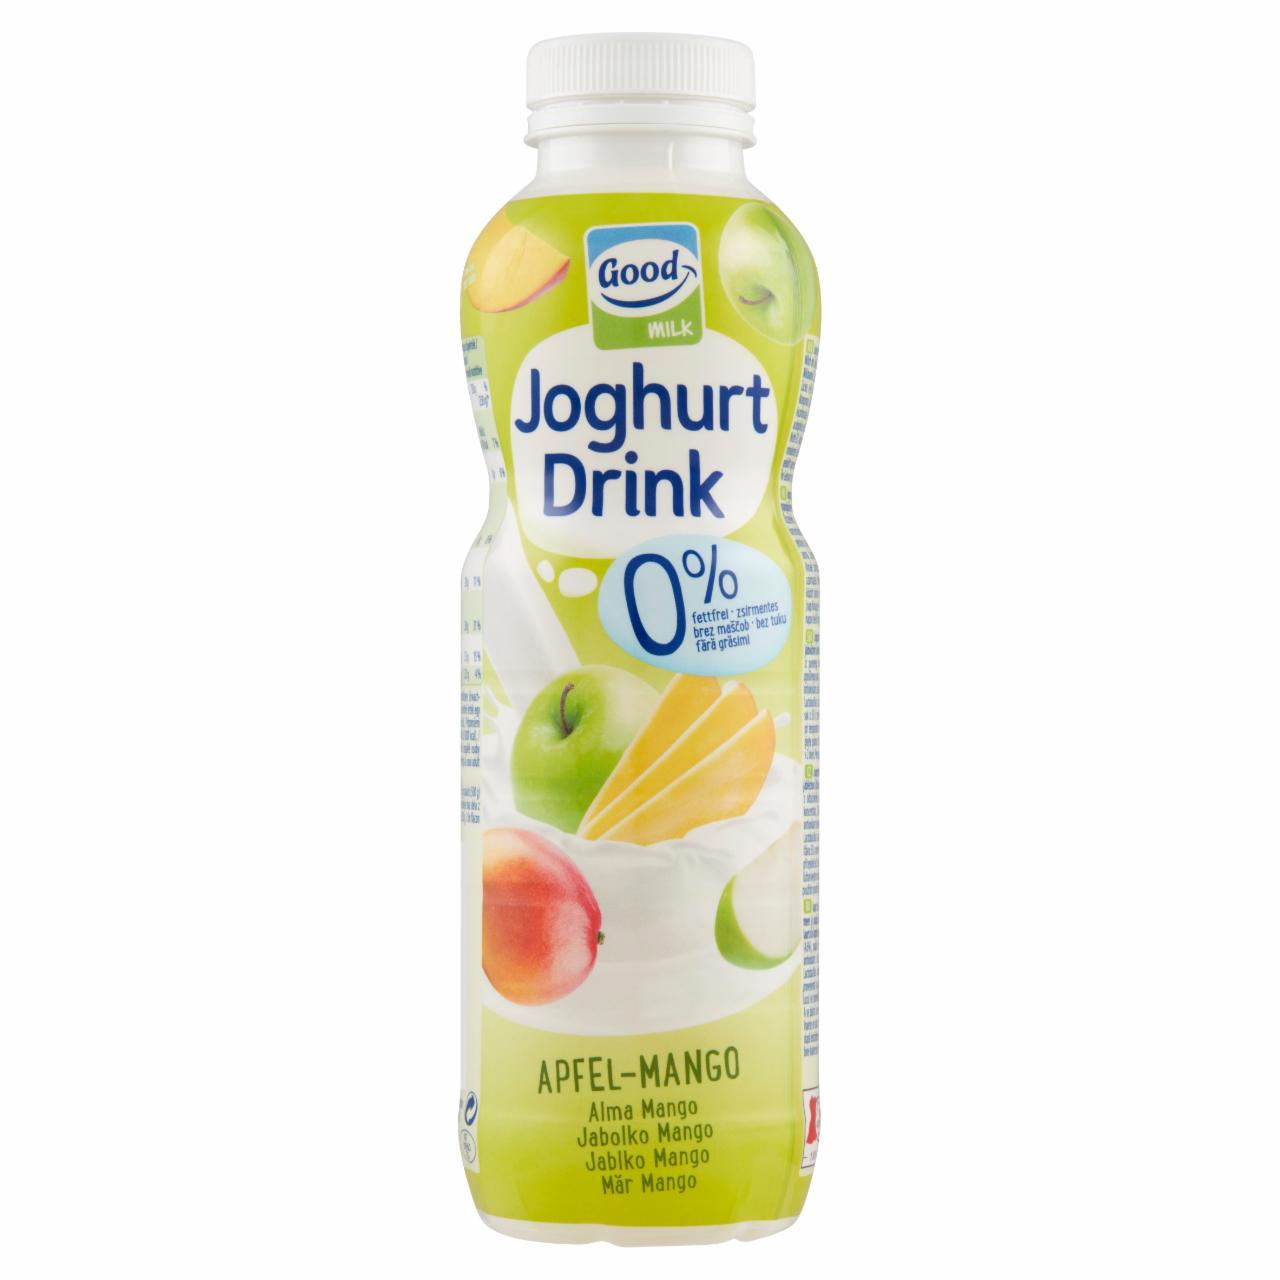 Képek - Good Milk sovány joghurtital almalével és mangópürével 500 g